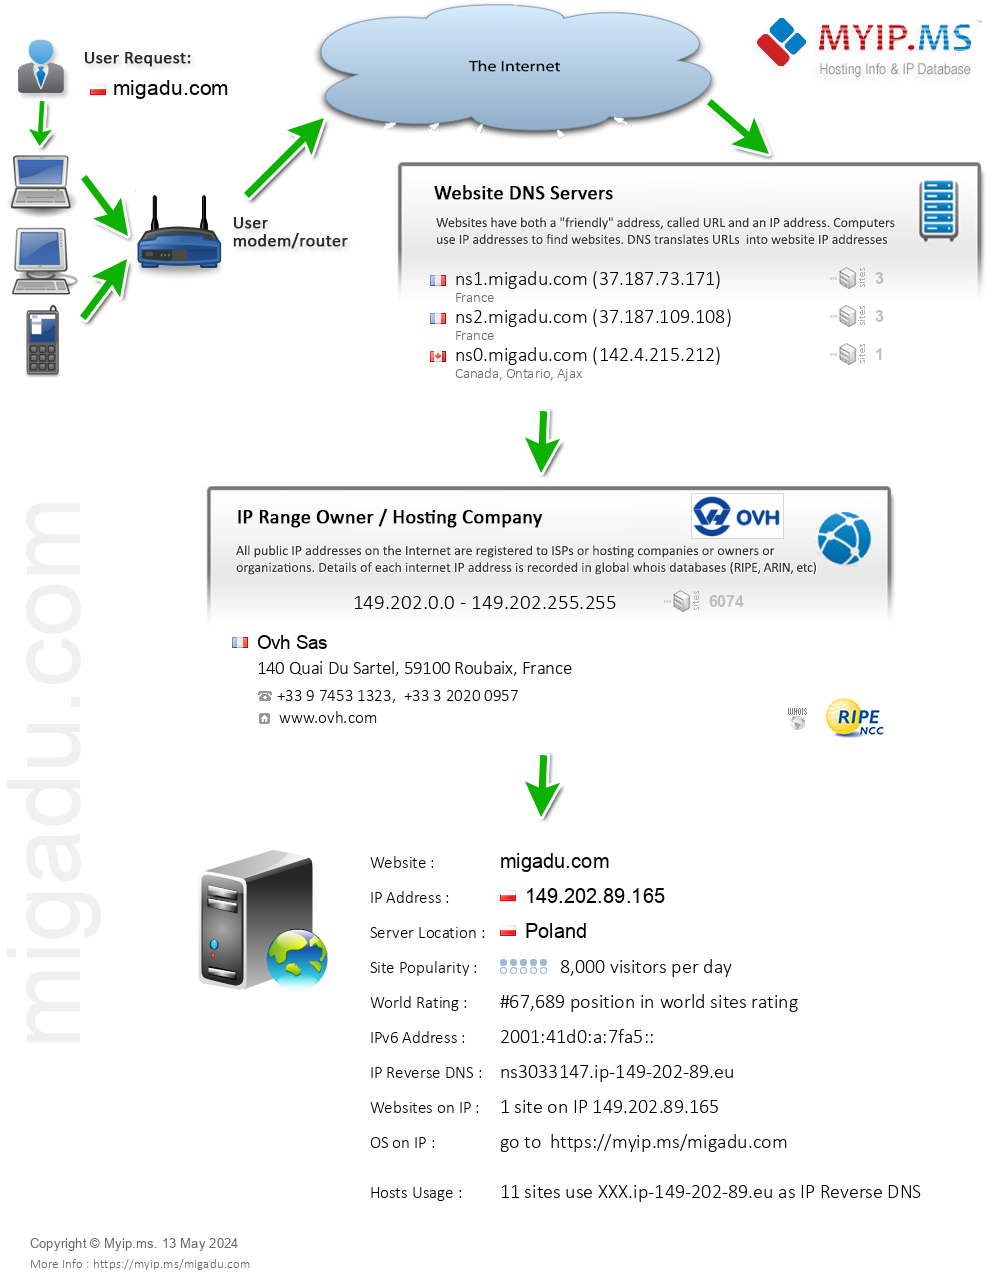 Migadu.com - Website Hosting Visual IP Diagram